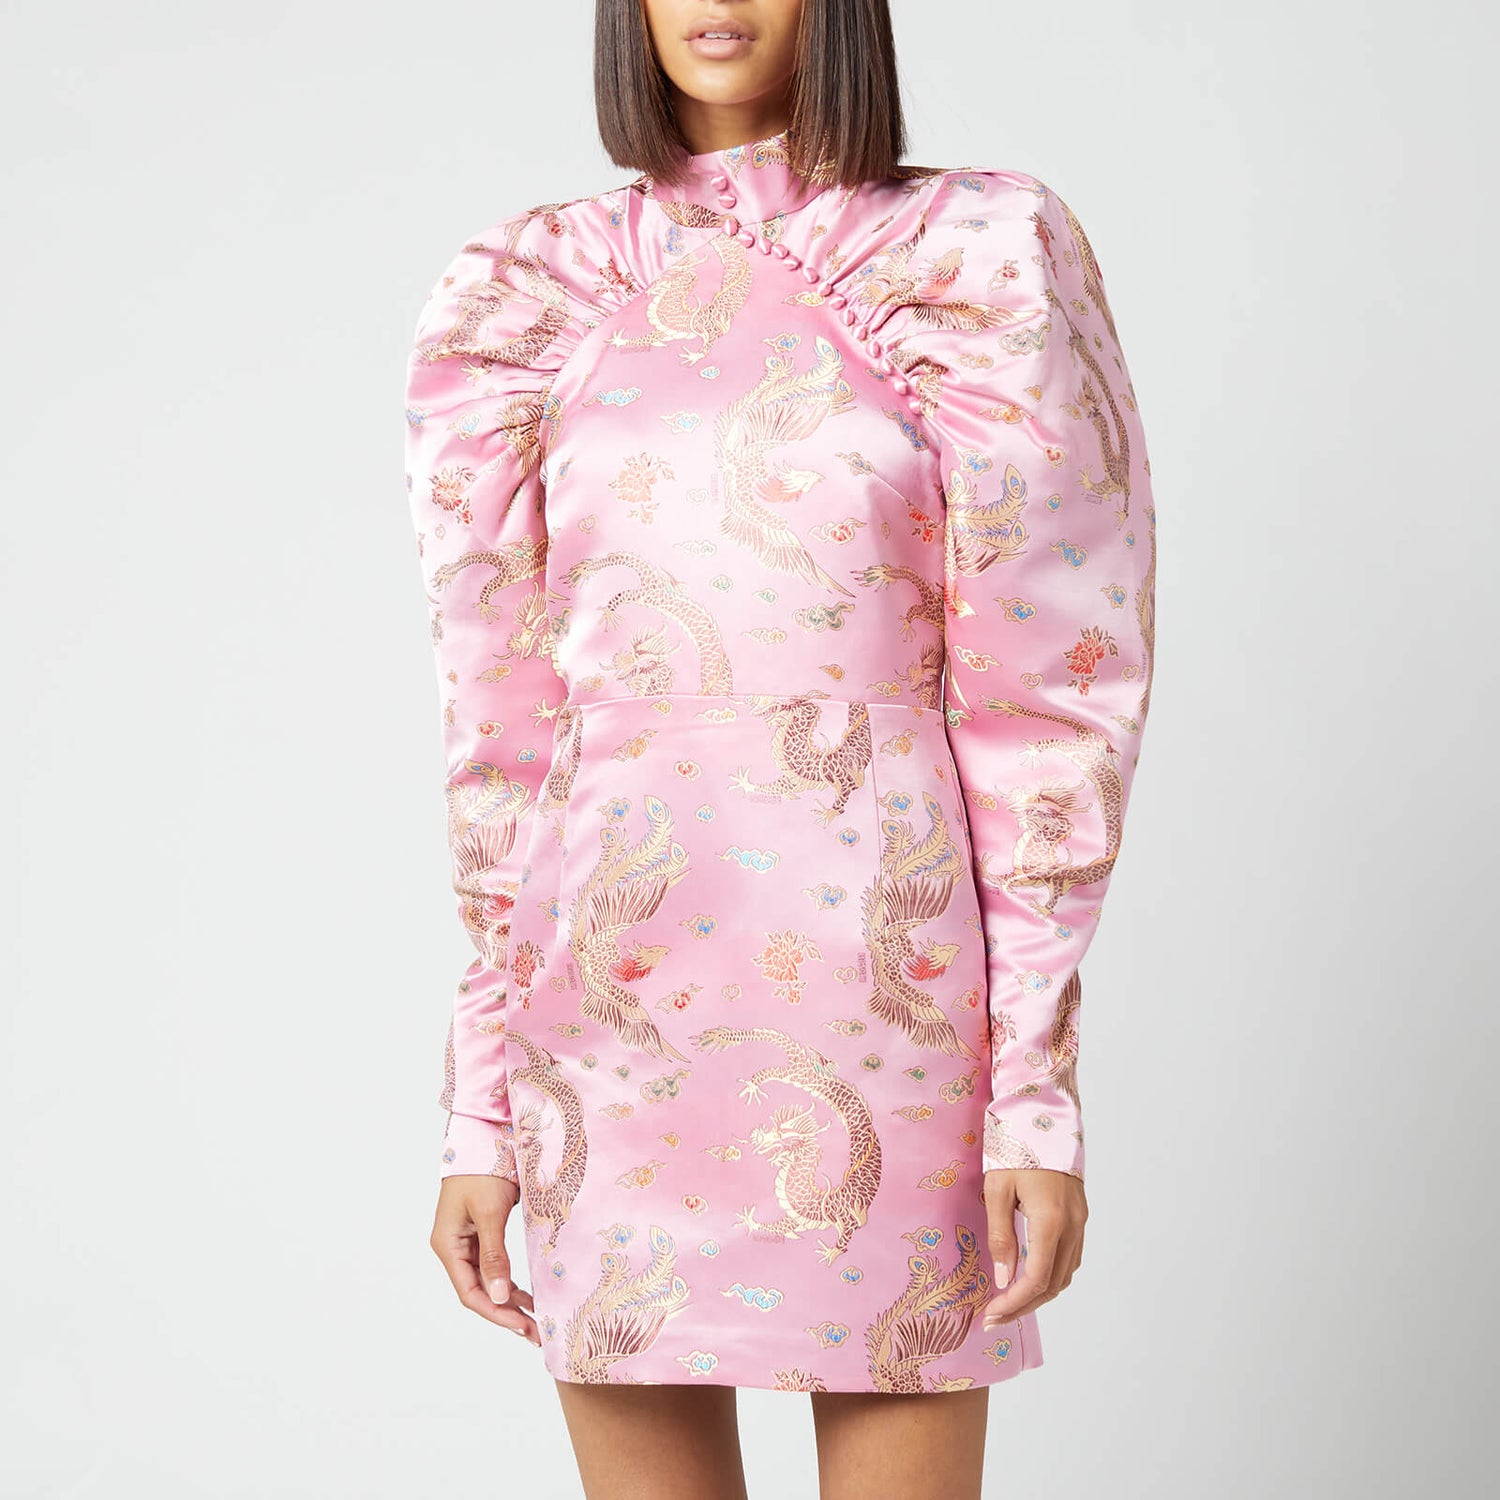 ROTATE Birger Christensen Women's Kim Dress - Orchid Pink